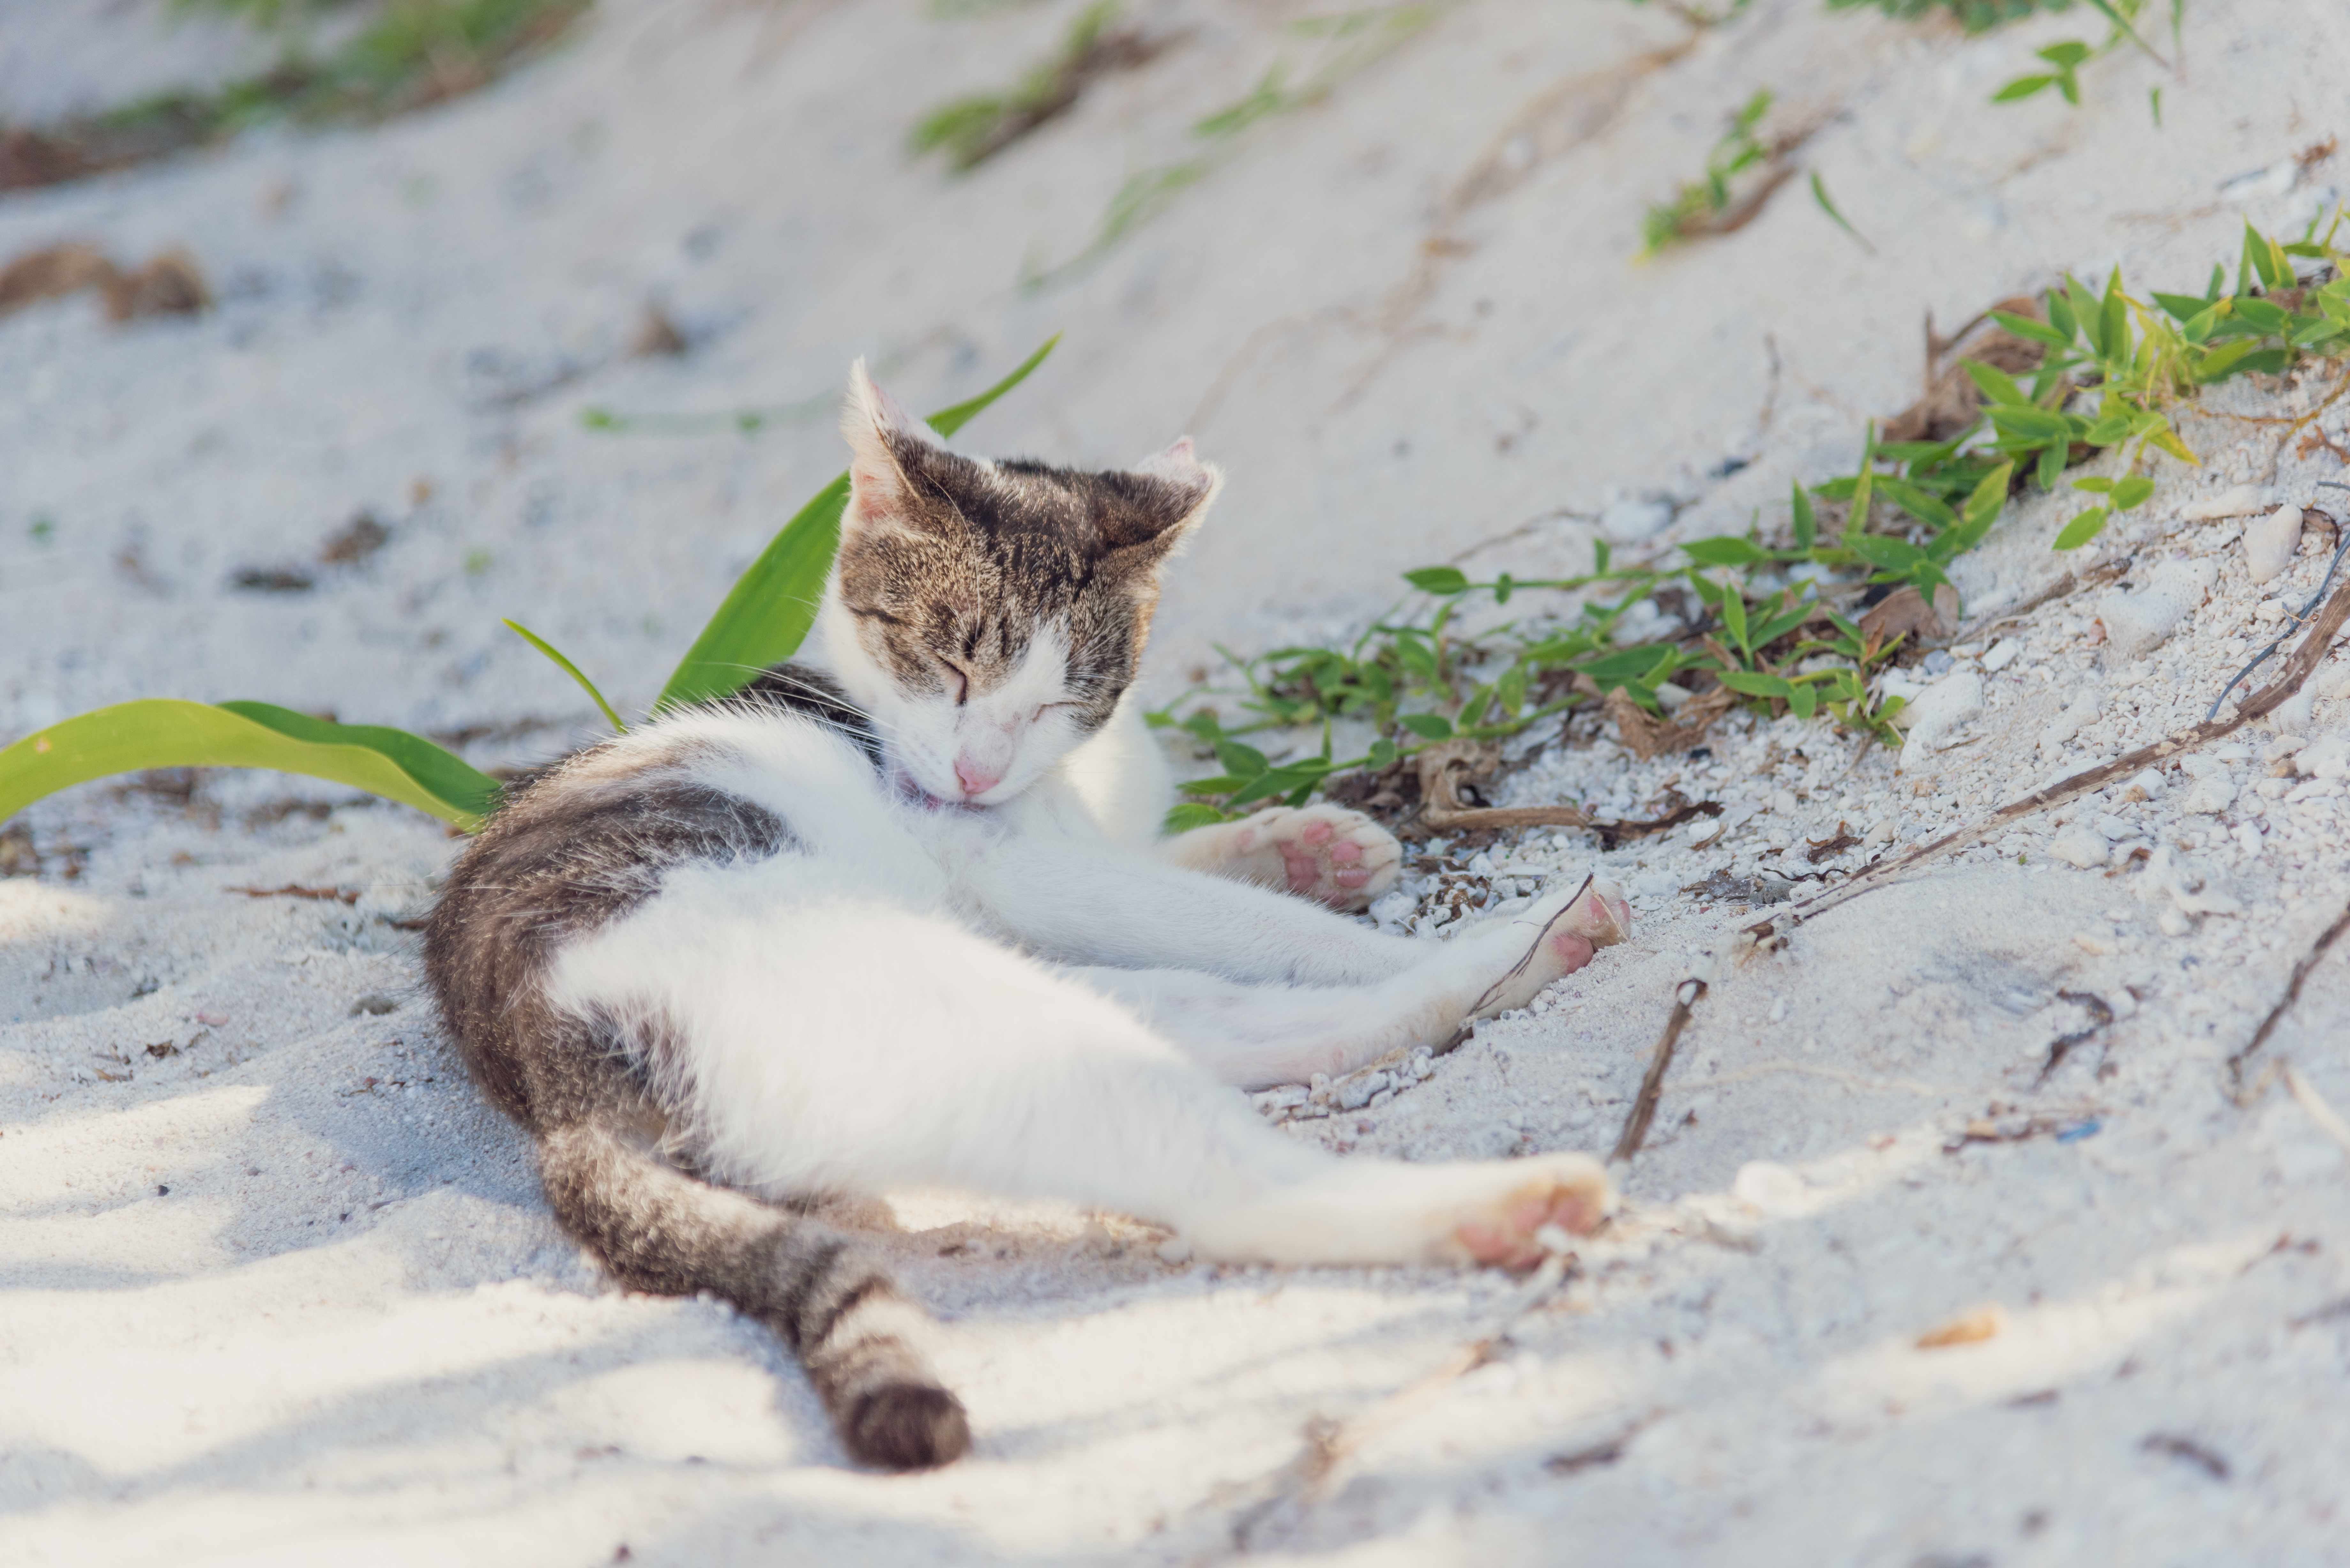 【沖縄県】猫の里親になれる譲渡会や保護施設をご紹介
